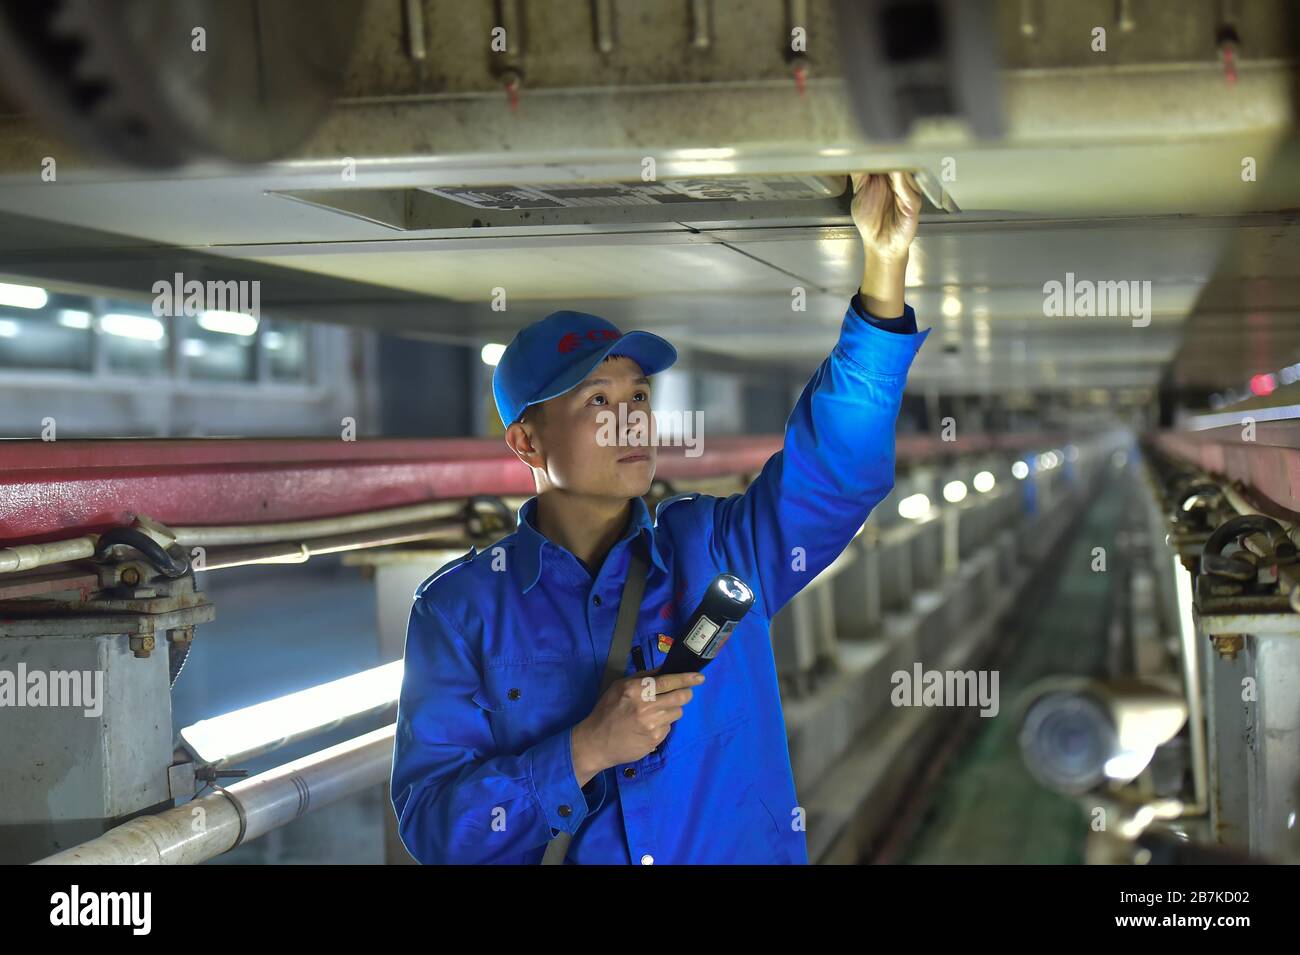 Les responsables et les réparateurs travaillent sur le site de service de trains à grande vitesse pour s'assurer que tous les trains fonctionnent bien, Shijiazhuang City, Hebei au nord de la Chine Banque D'Images